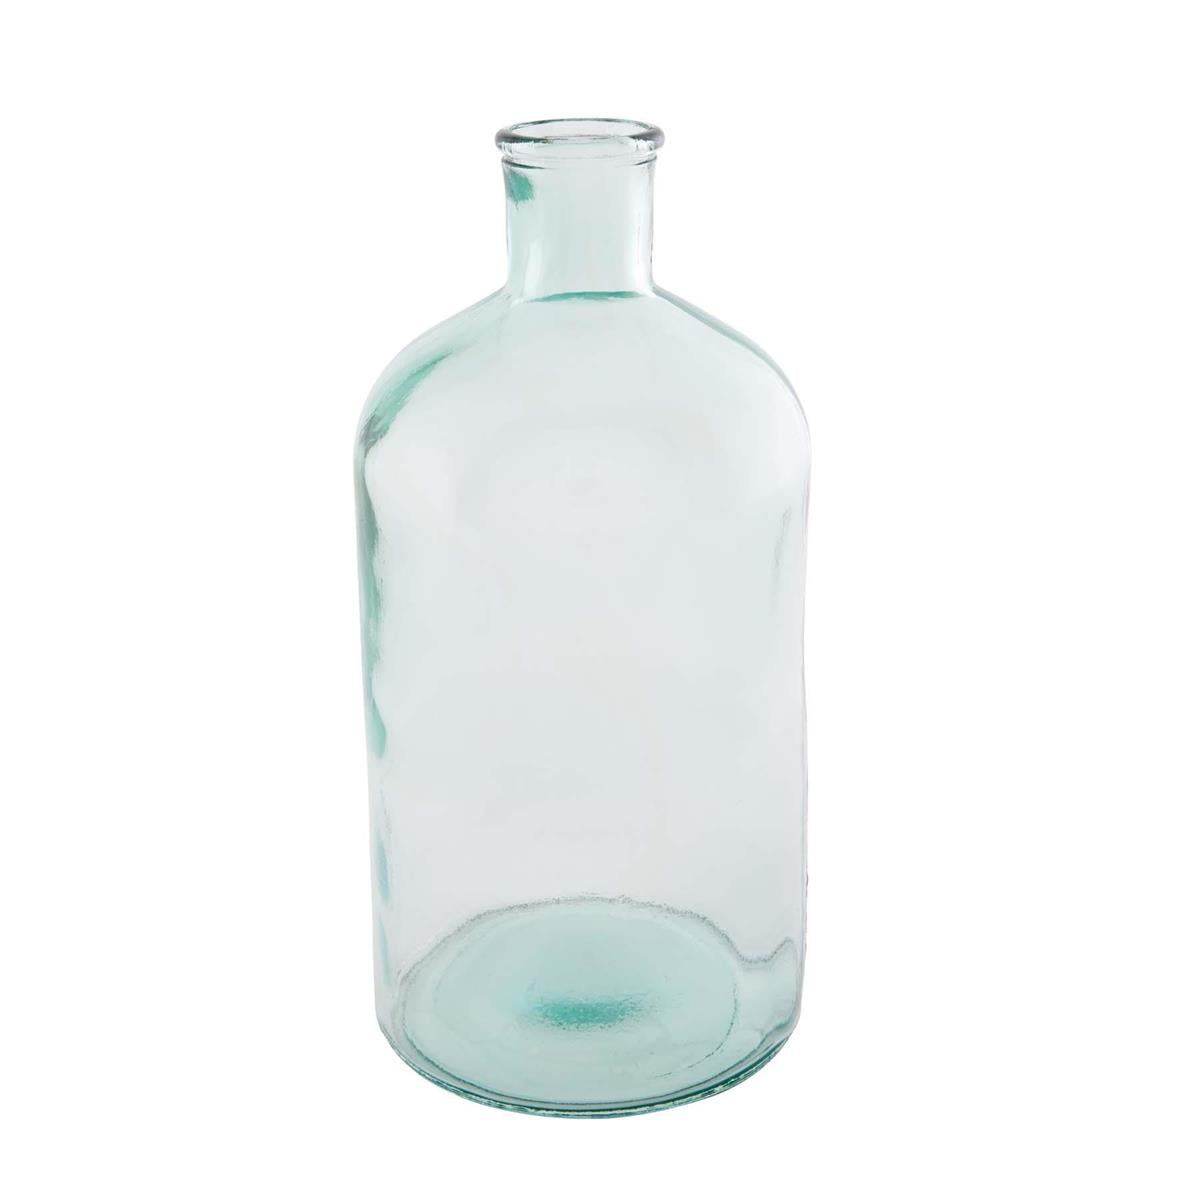 Spanish Glass Bottle Jug | Large